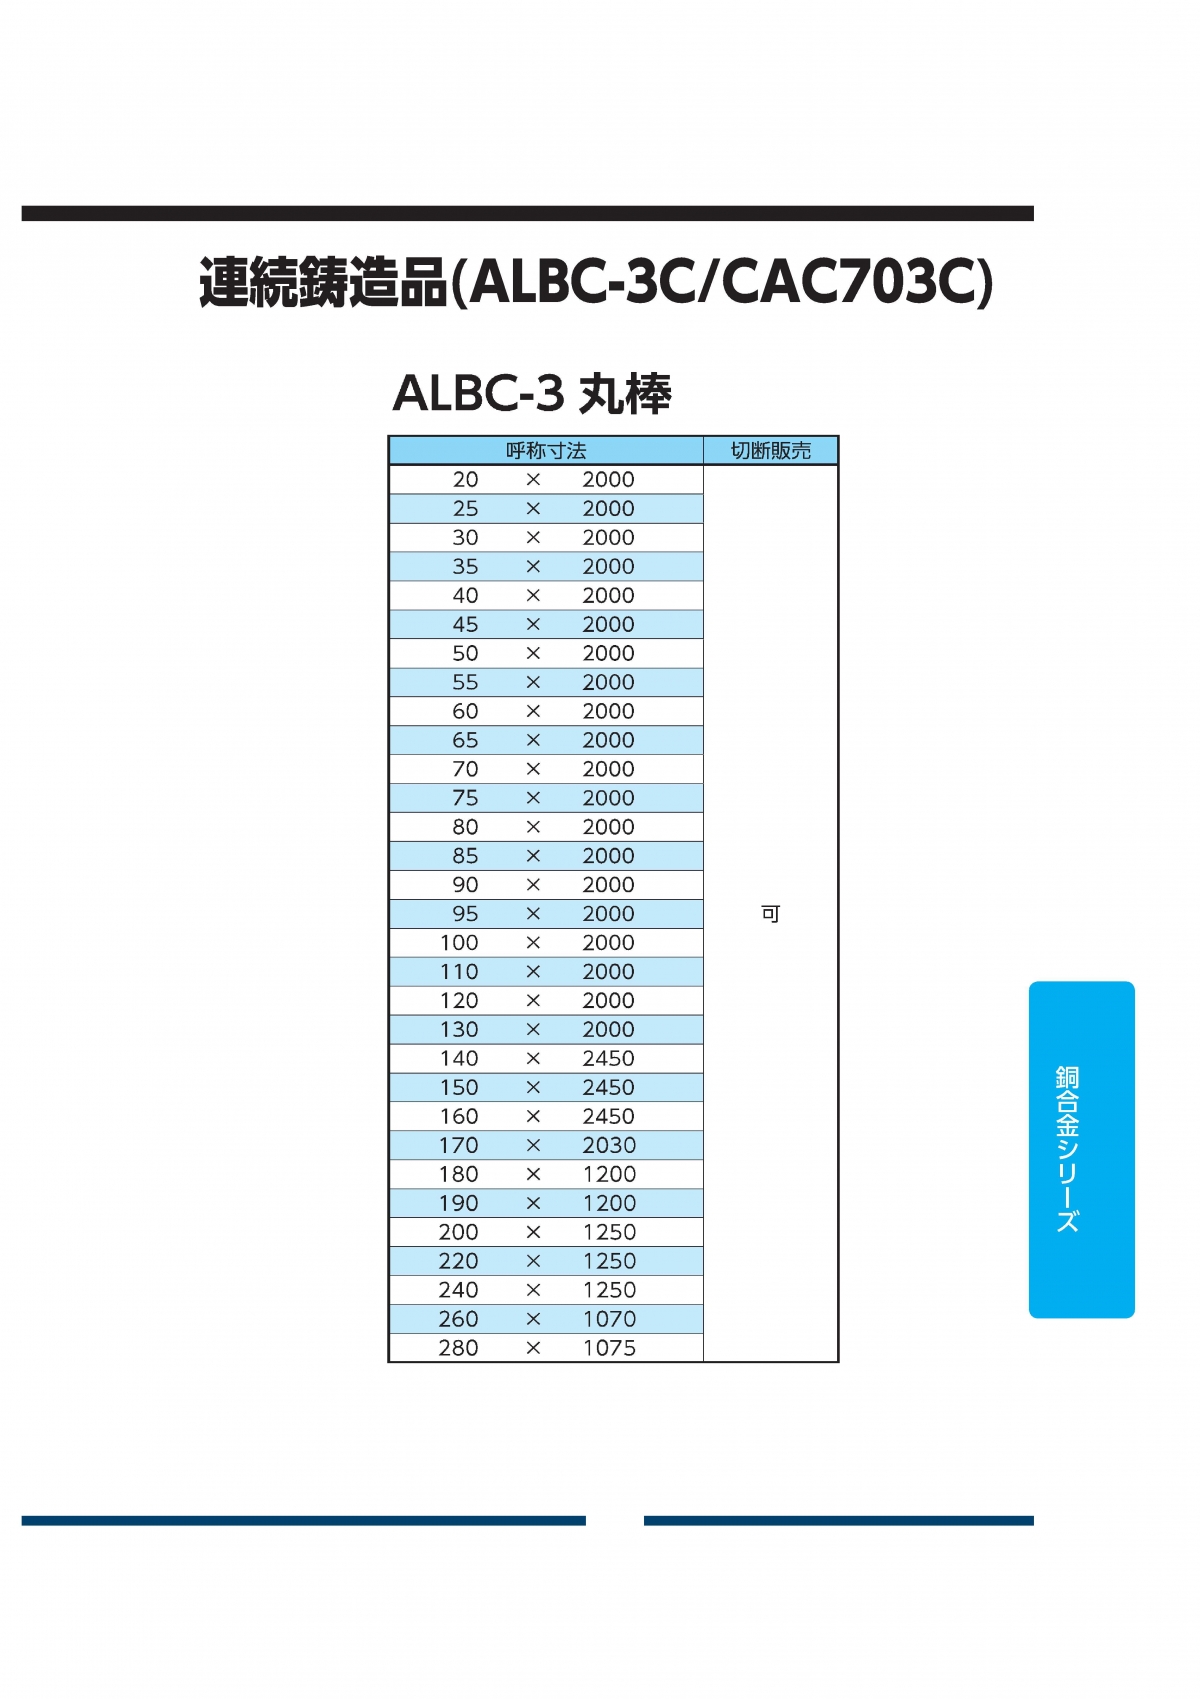 ALBC-3丸棒(CAC703C)